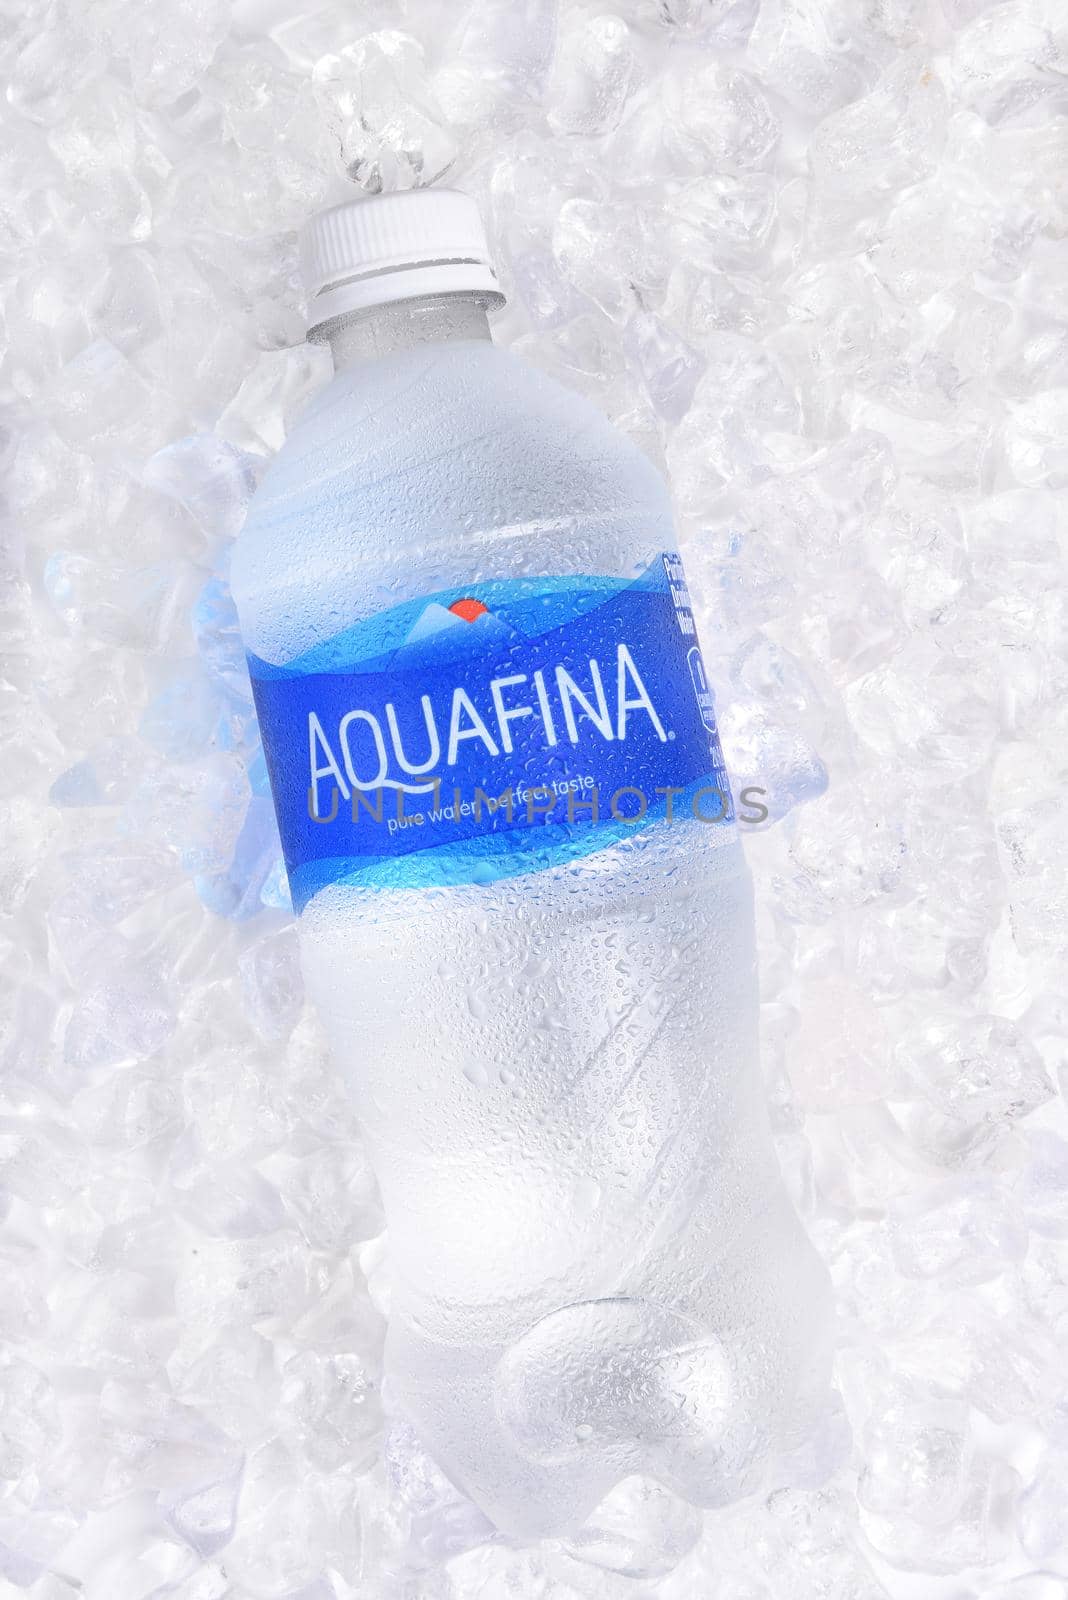 Aquafina Water Bottle on ice by sCukrov